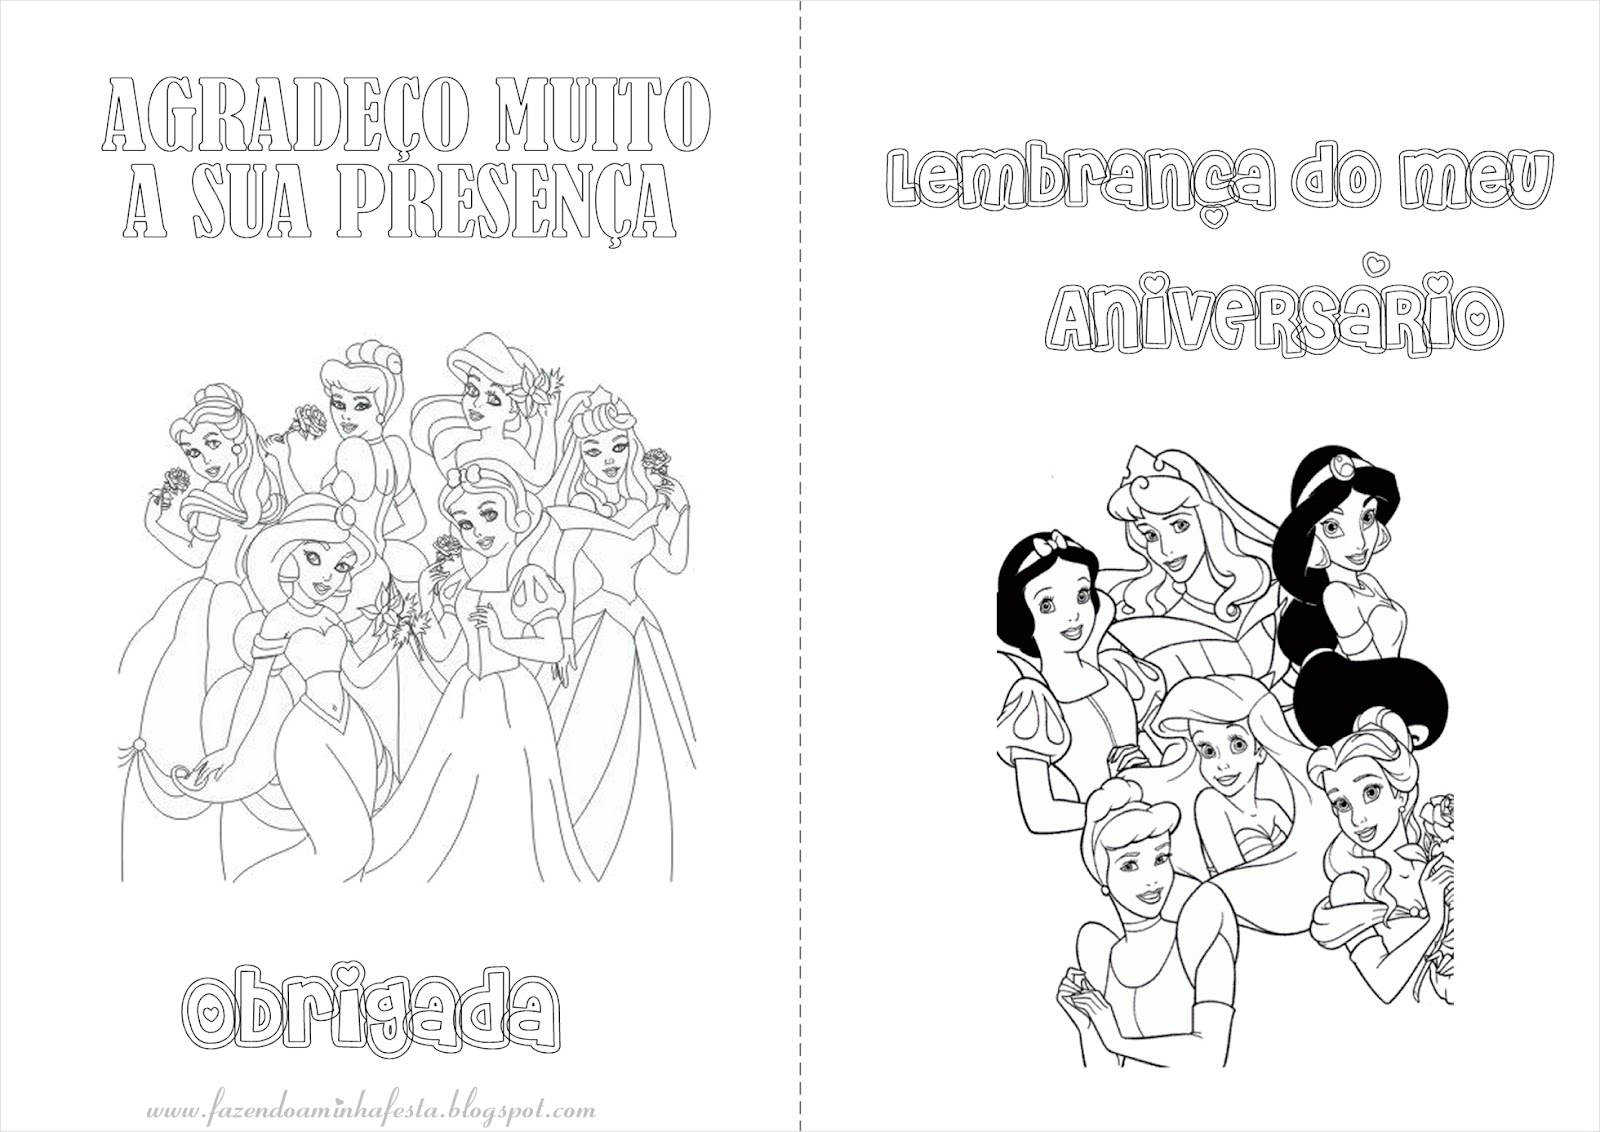 Livro - Princesas - Colorir - Especial - Vol.2: Uma linda história